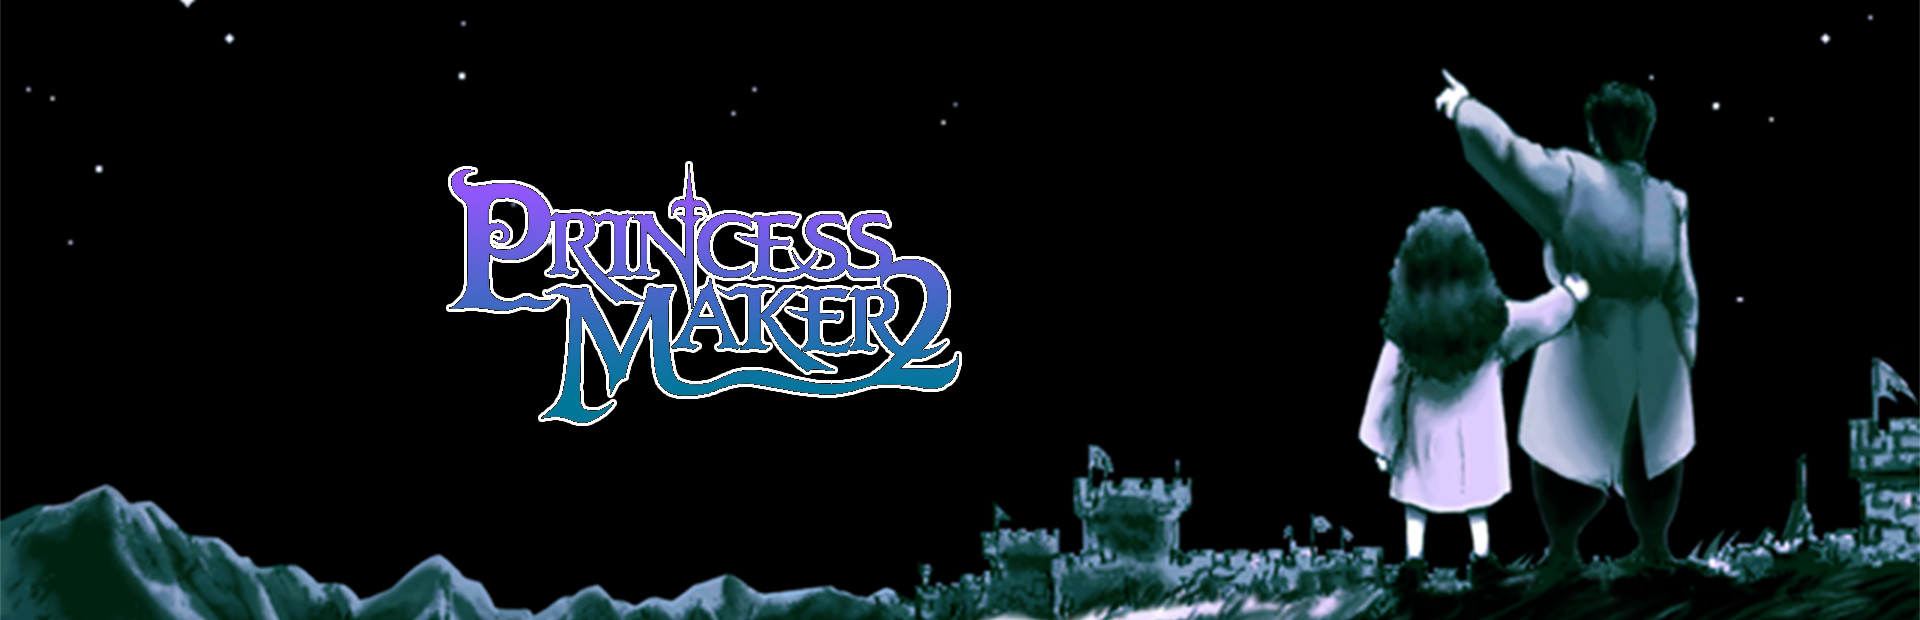 Princess Maker 2 Refine cover image